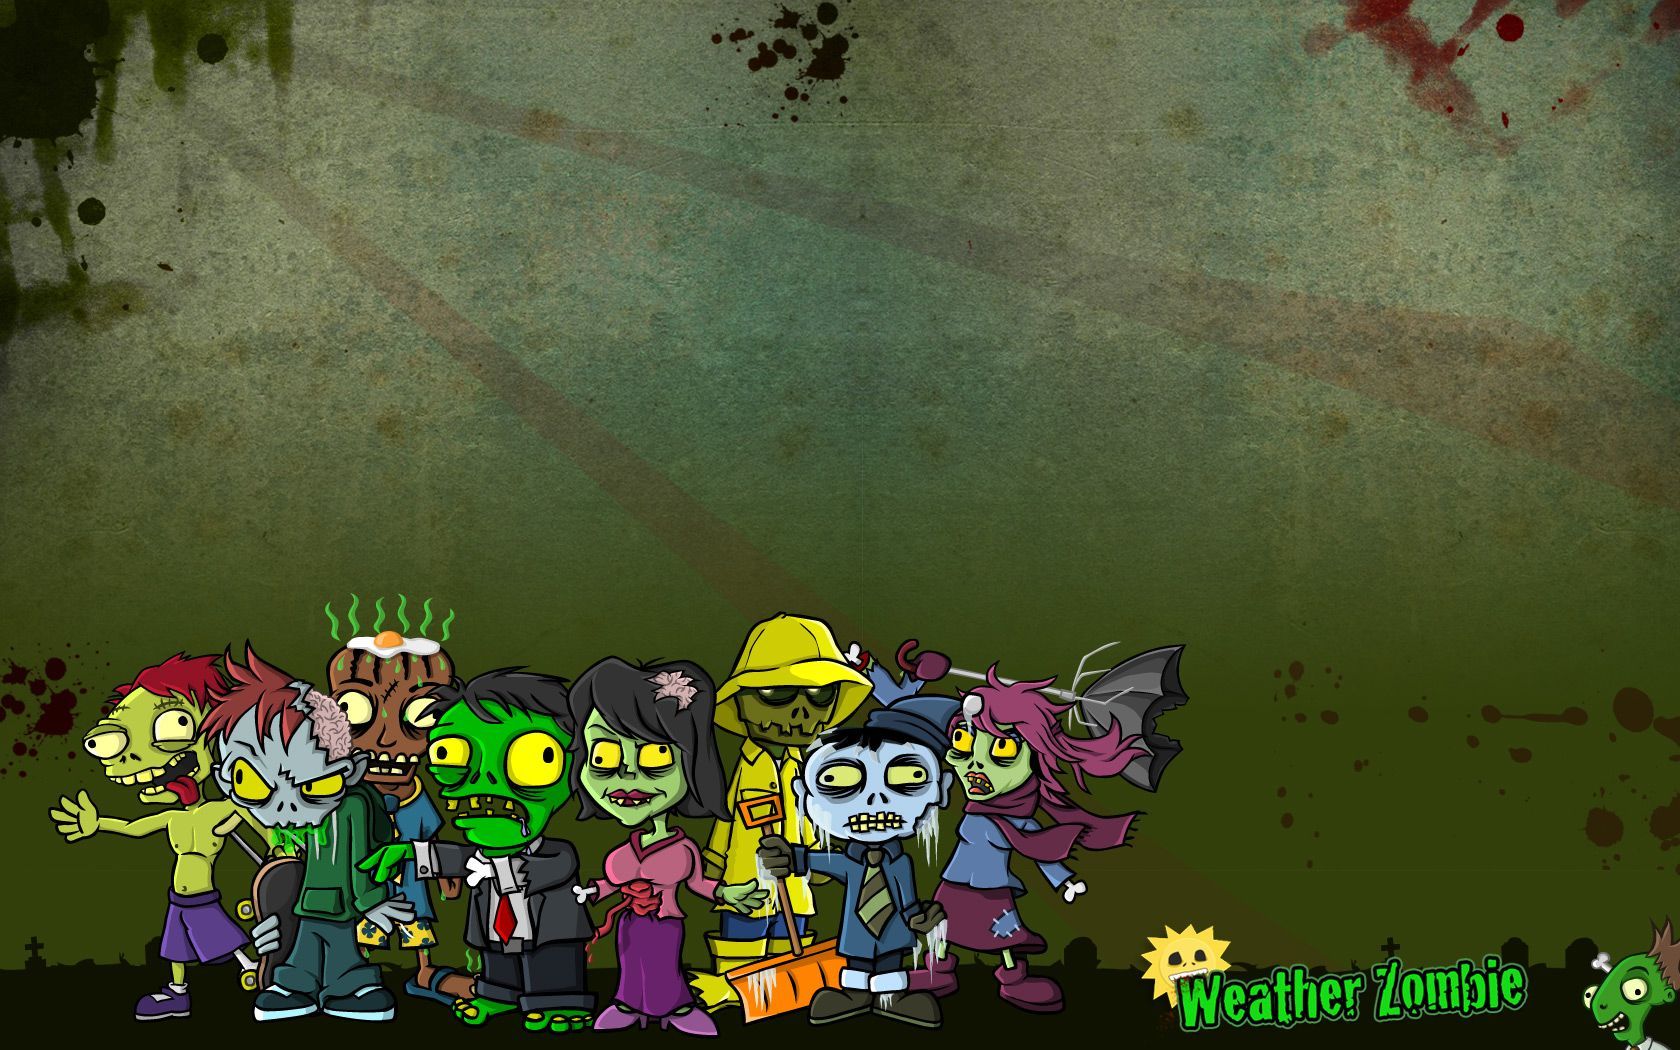 Cute Zombie Wallpaper. Zombie wallpaper, Cute zombie, Cartoon wallpaper